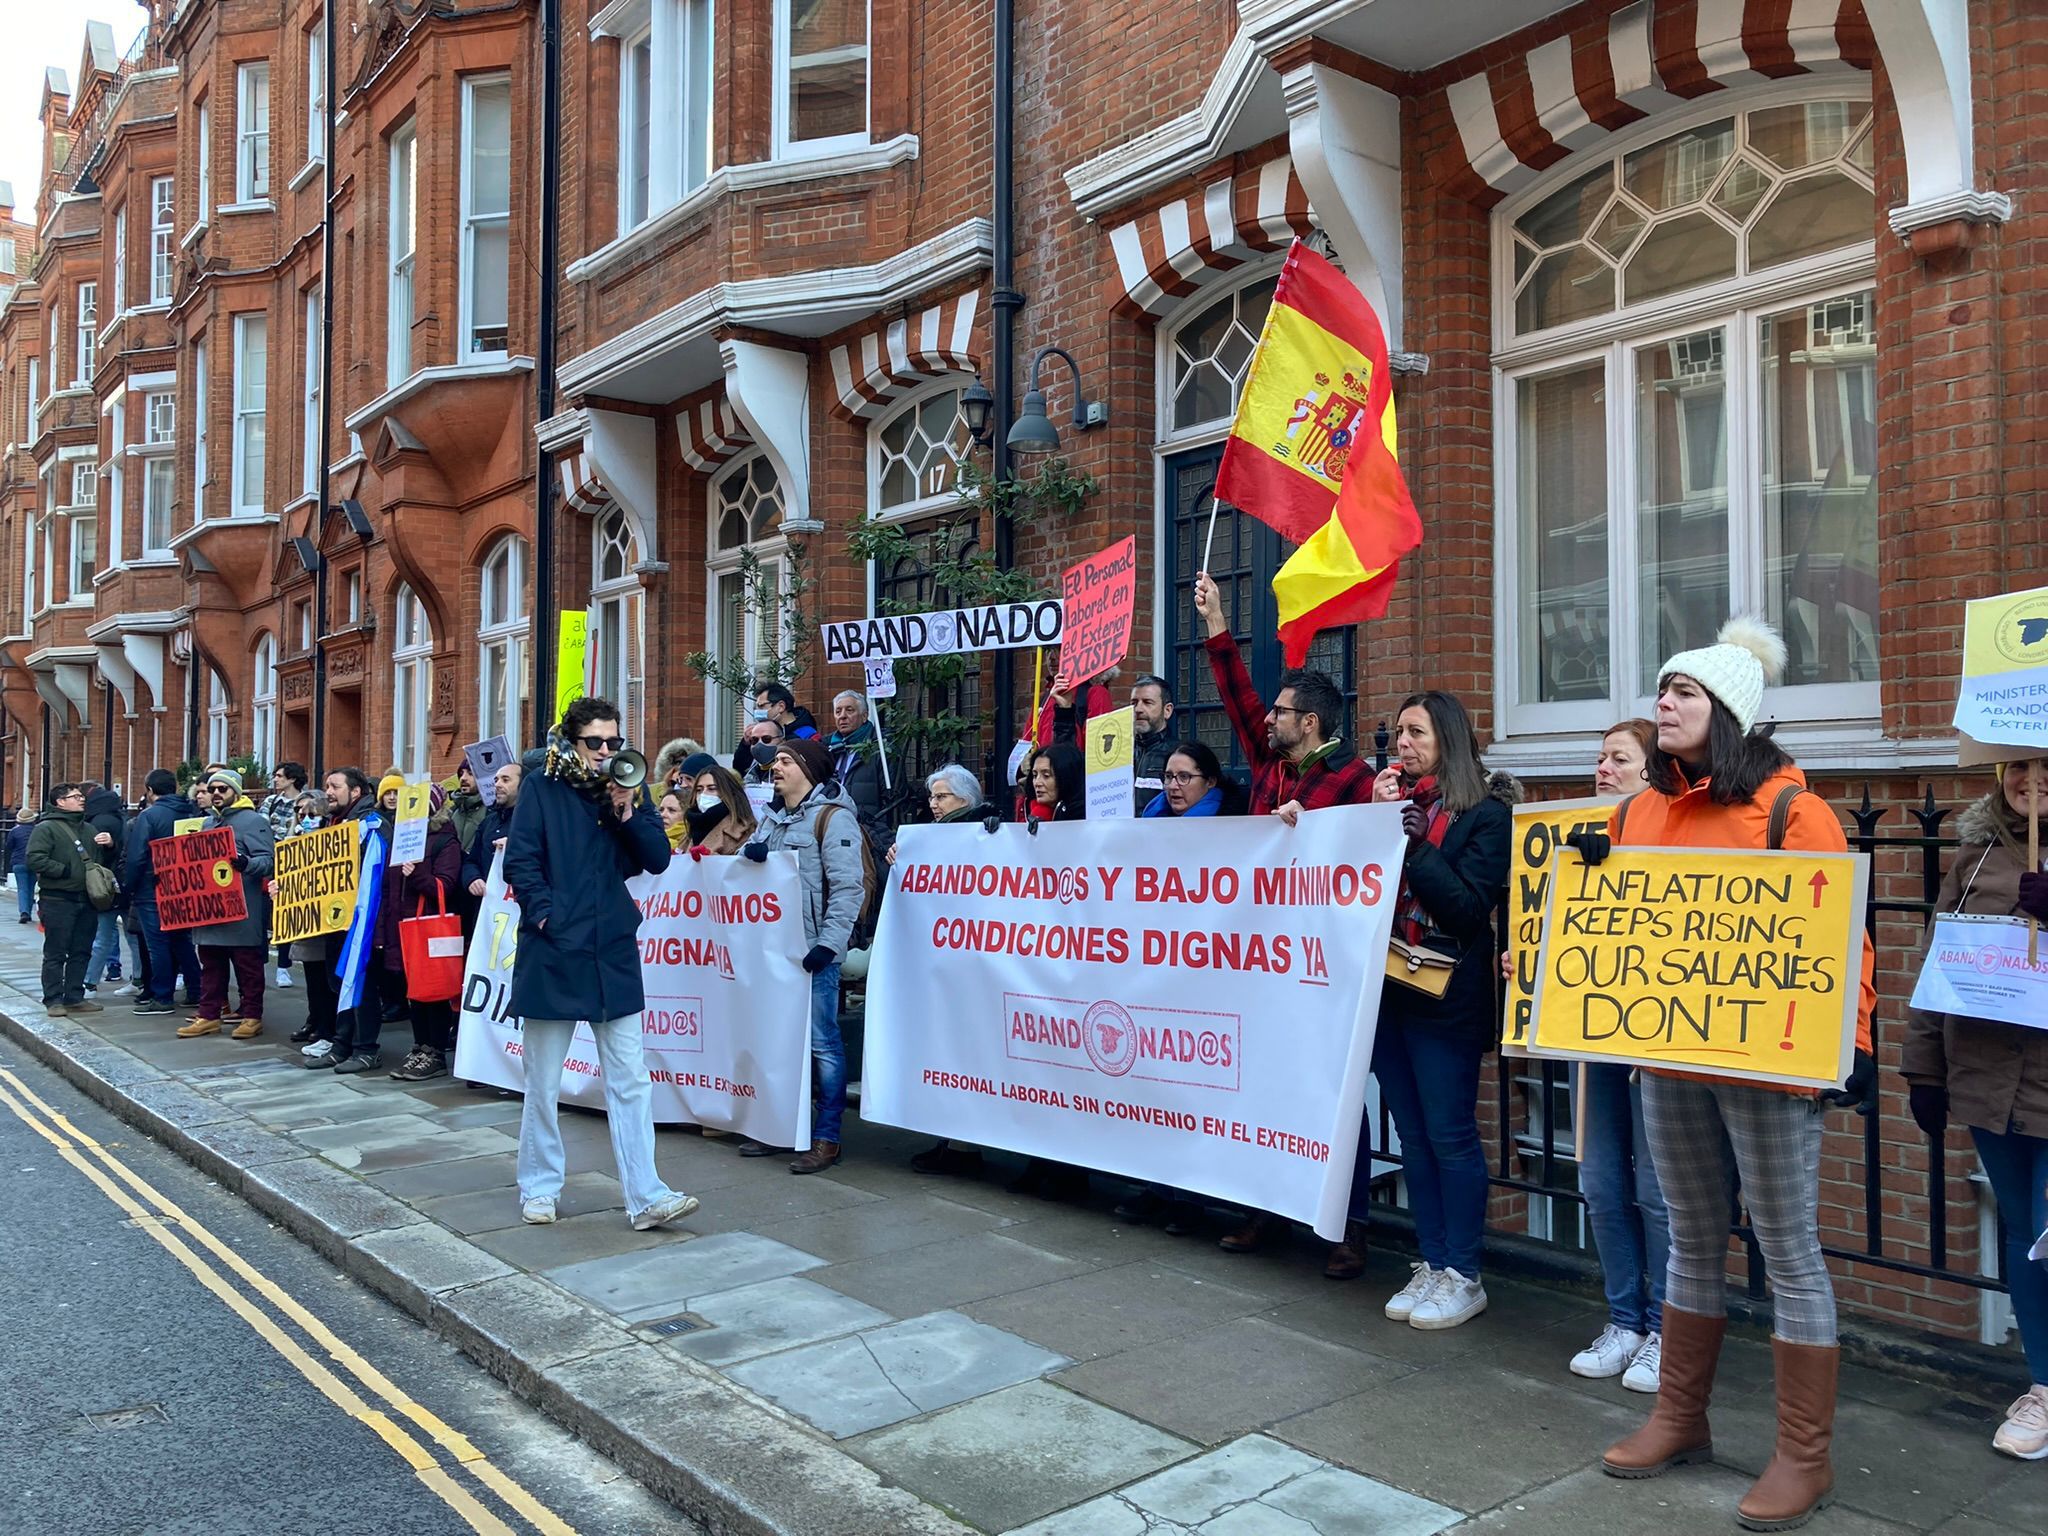 Protesta del personal laboral ante la Embajada de Londres